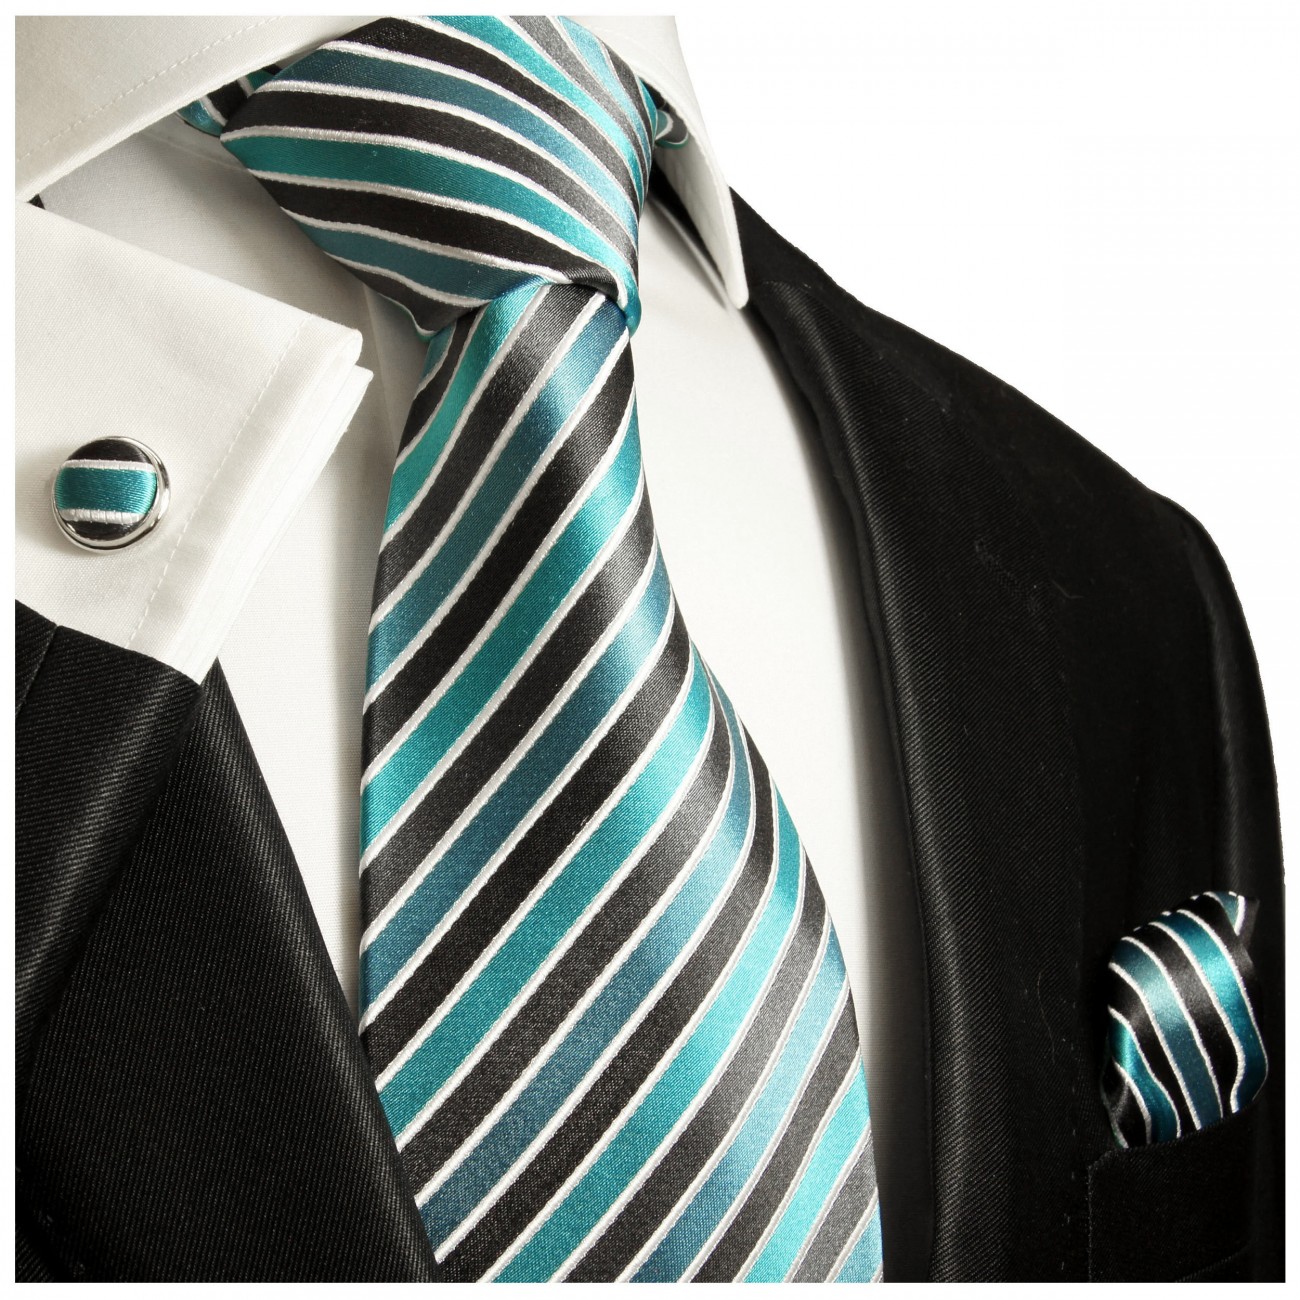 Krawatte türkis gestreift mit Einstecktuch und Manschettenknöpfe 250